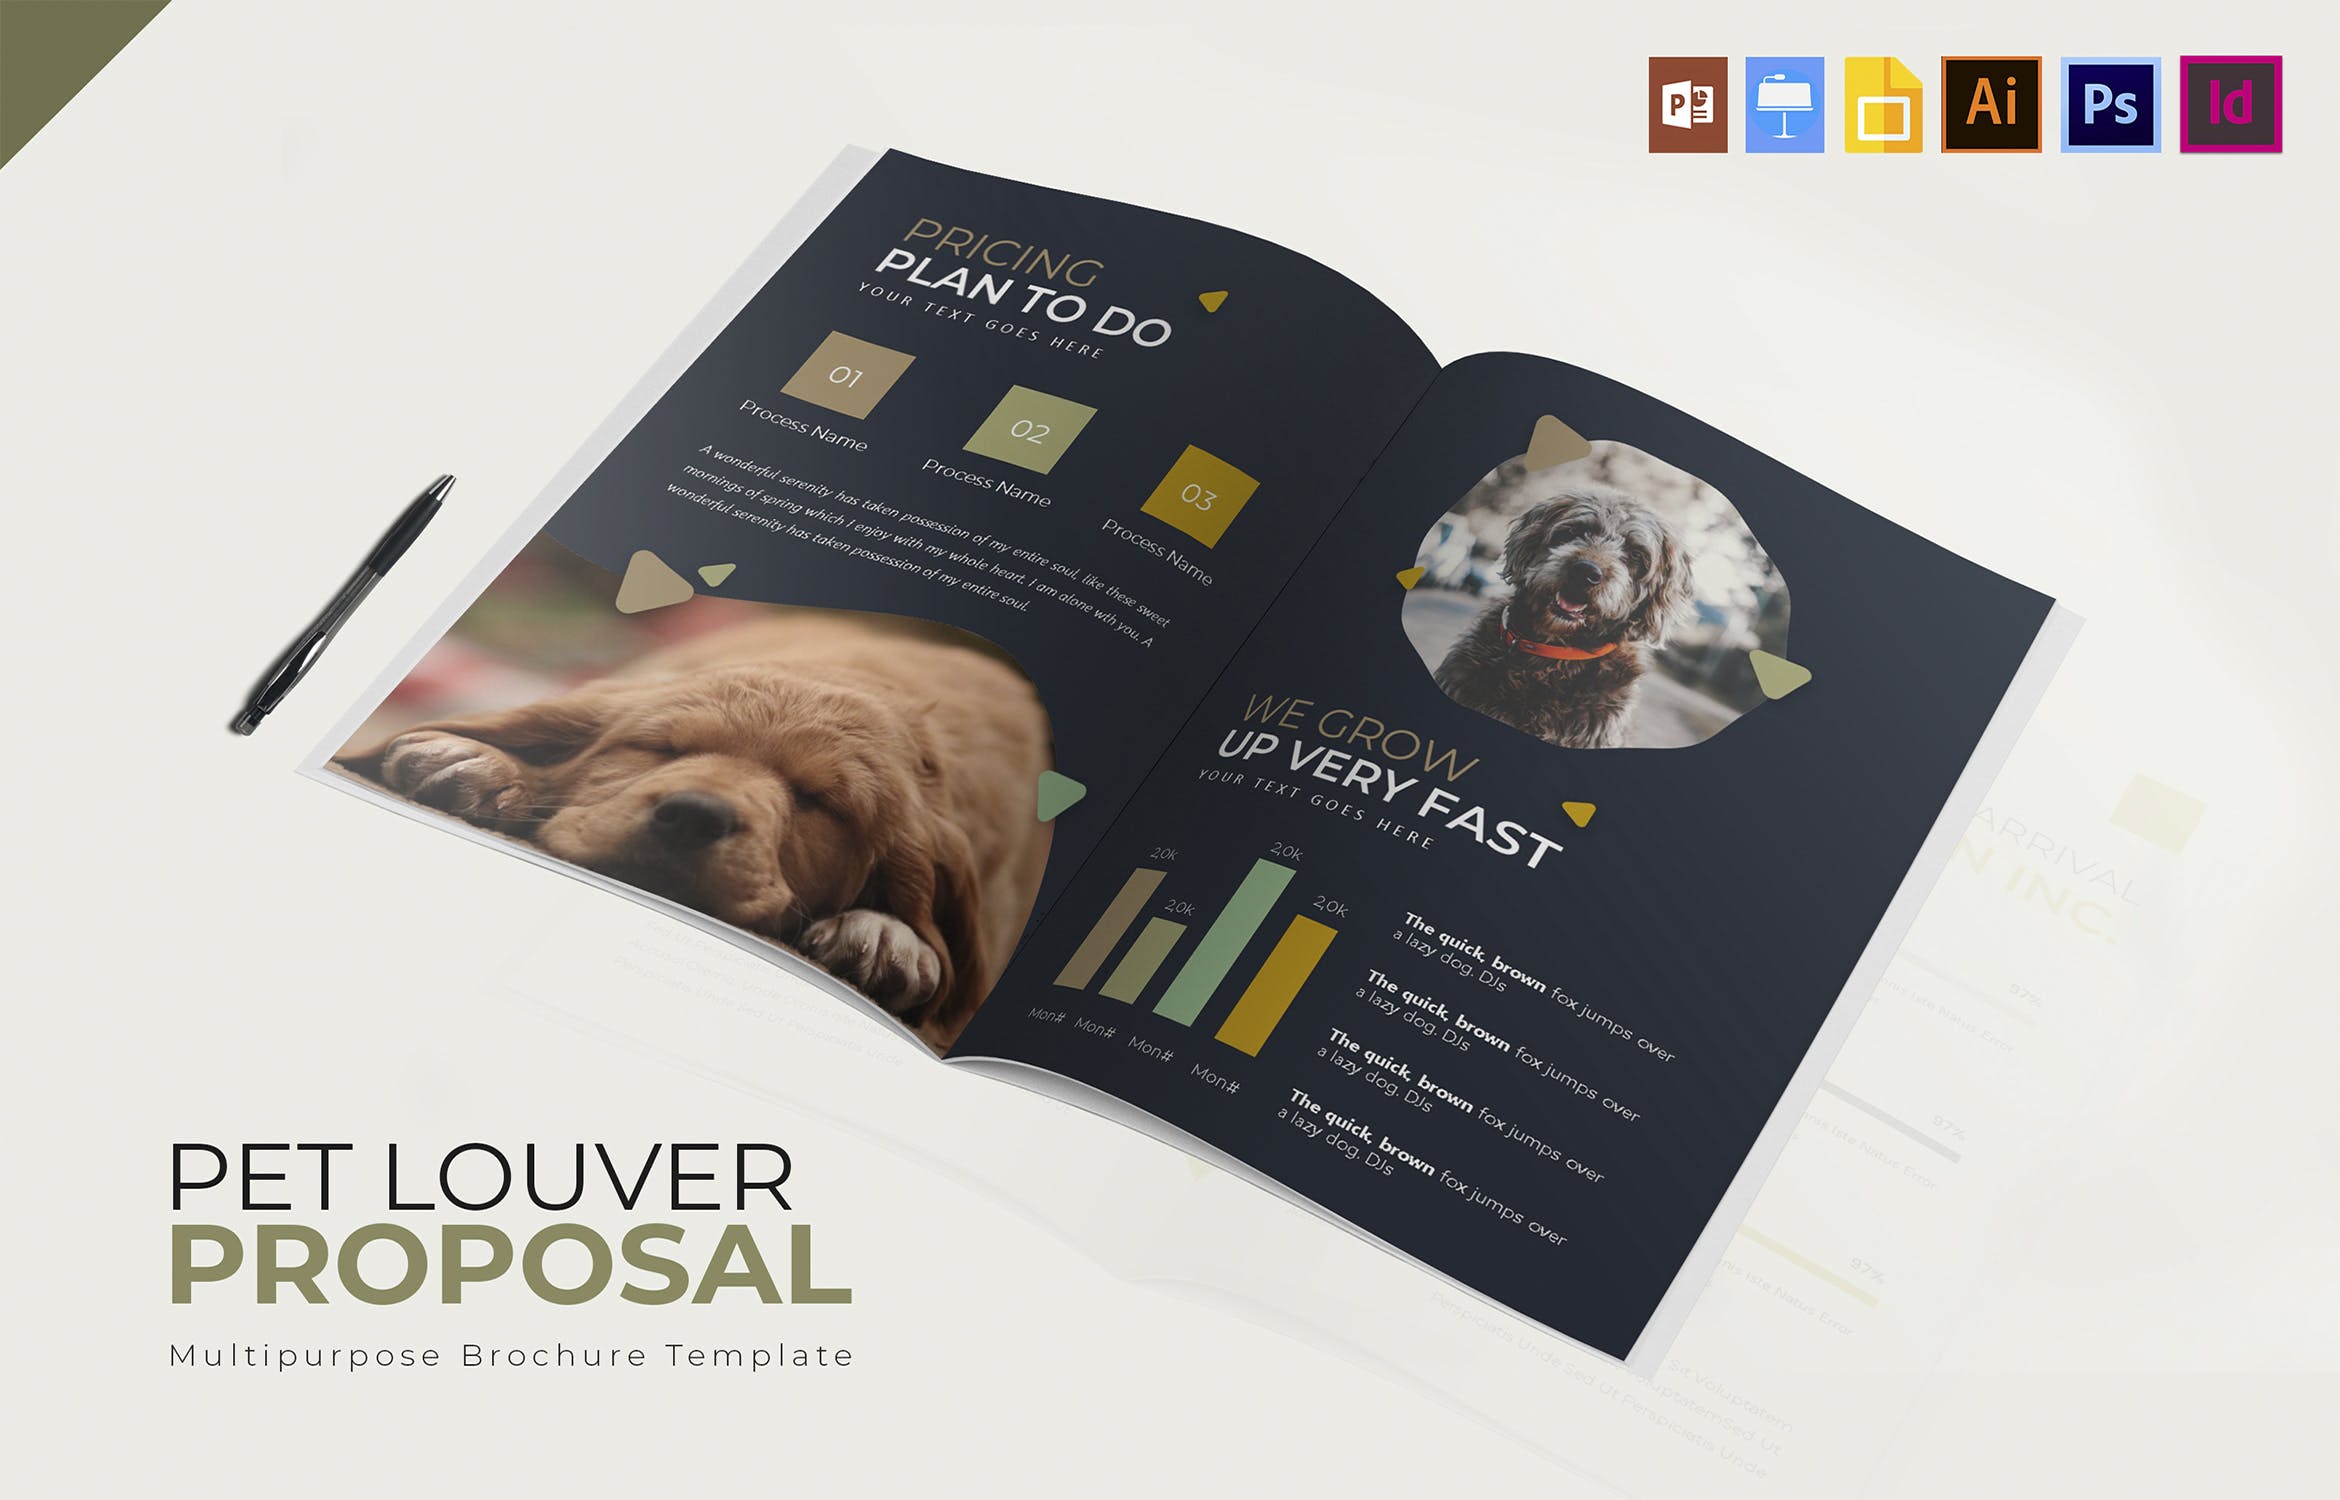 宠物主题宣传画册设计模板 Pets Louver | Brochure Template插图(2)